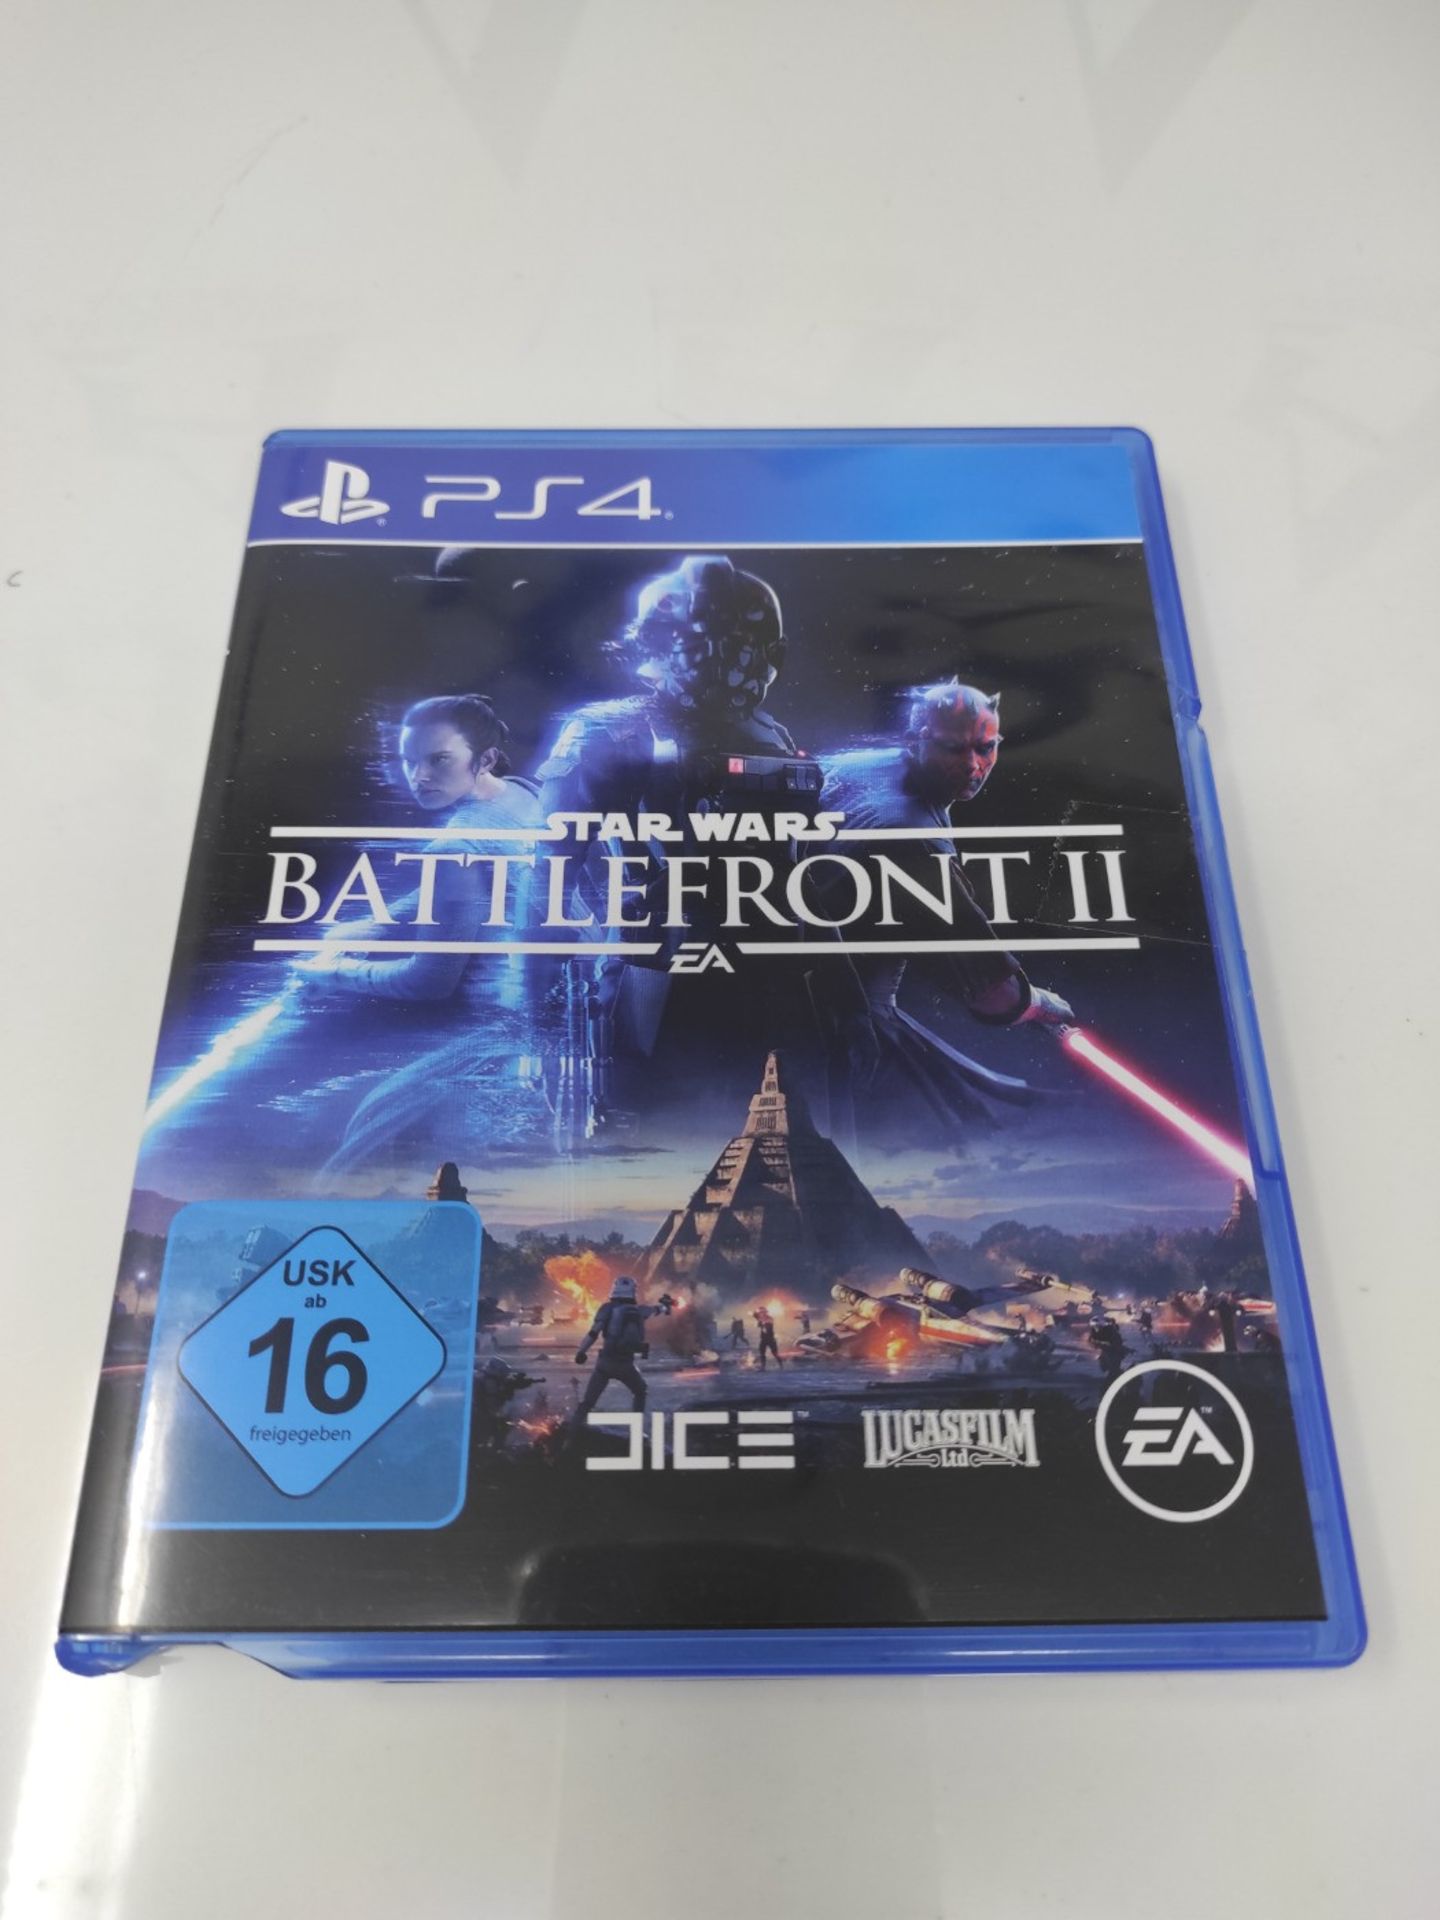 Star Wars Battlefront II | PlayStation 4 - Image 2 of 3